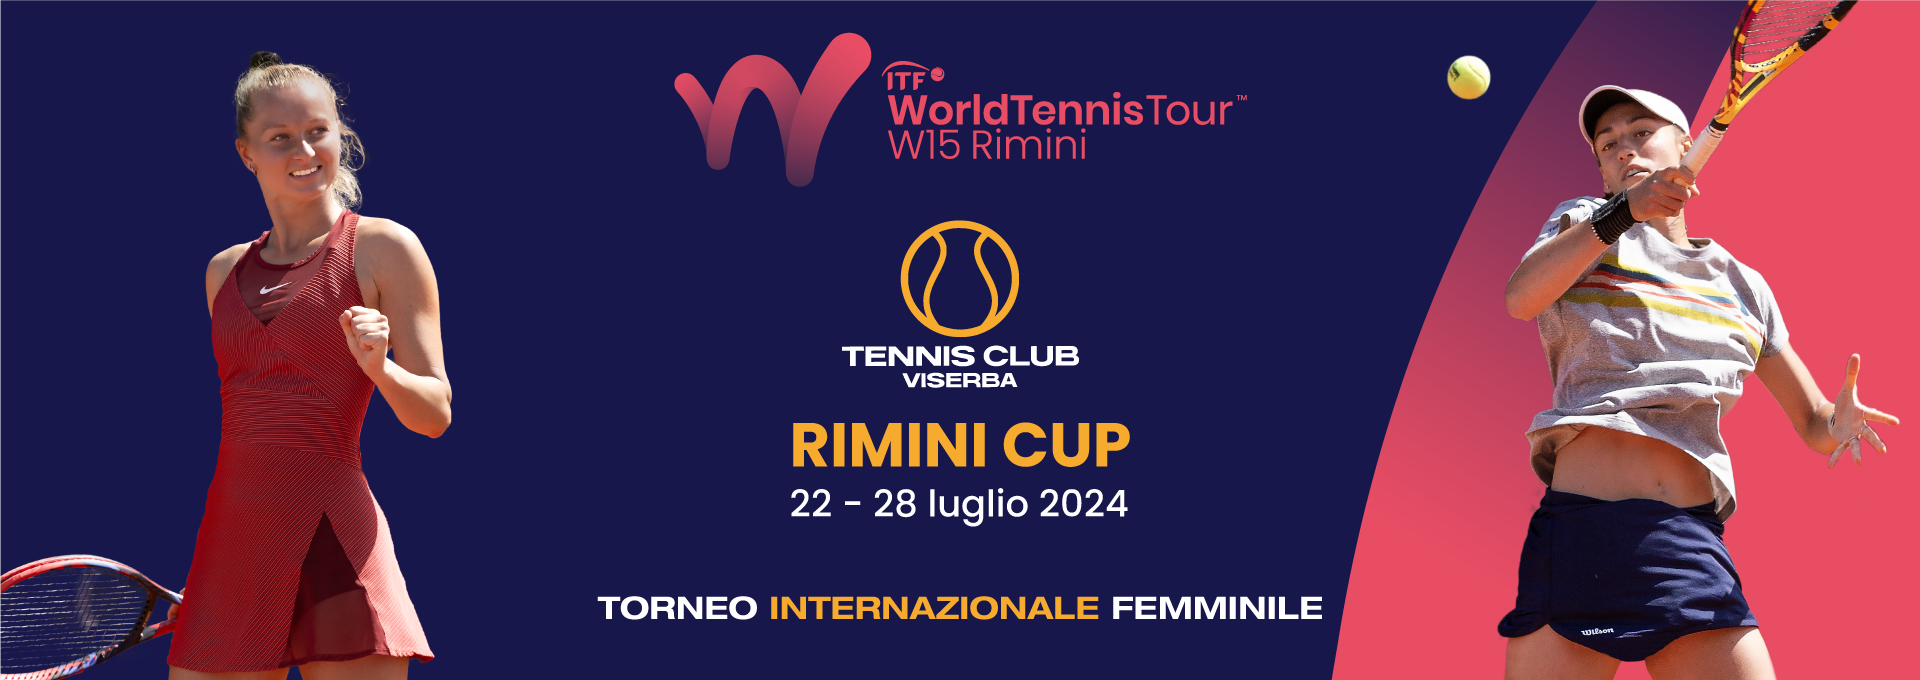 ITF-W15-Rimini-Cup-banner-sito-R2